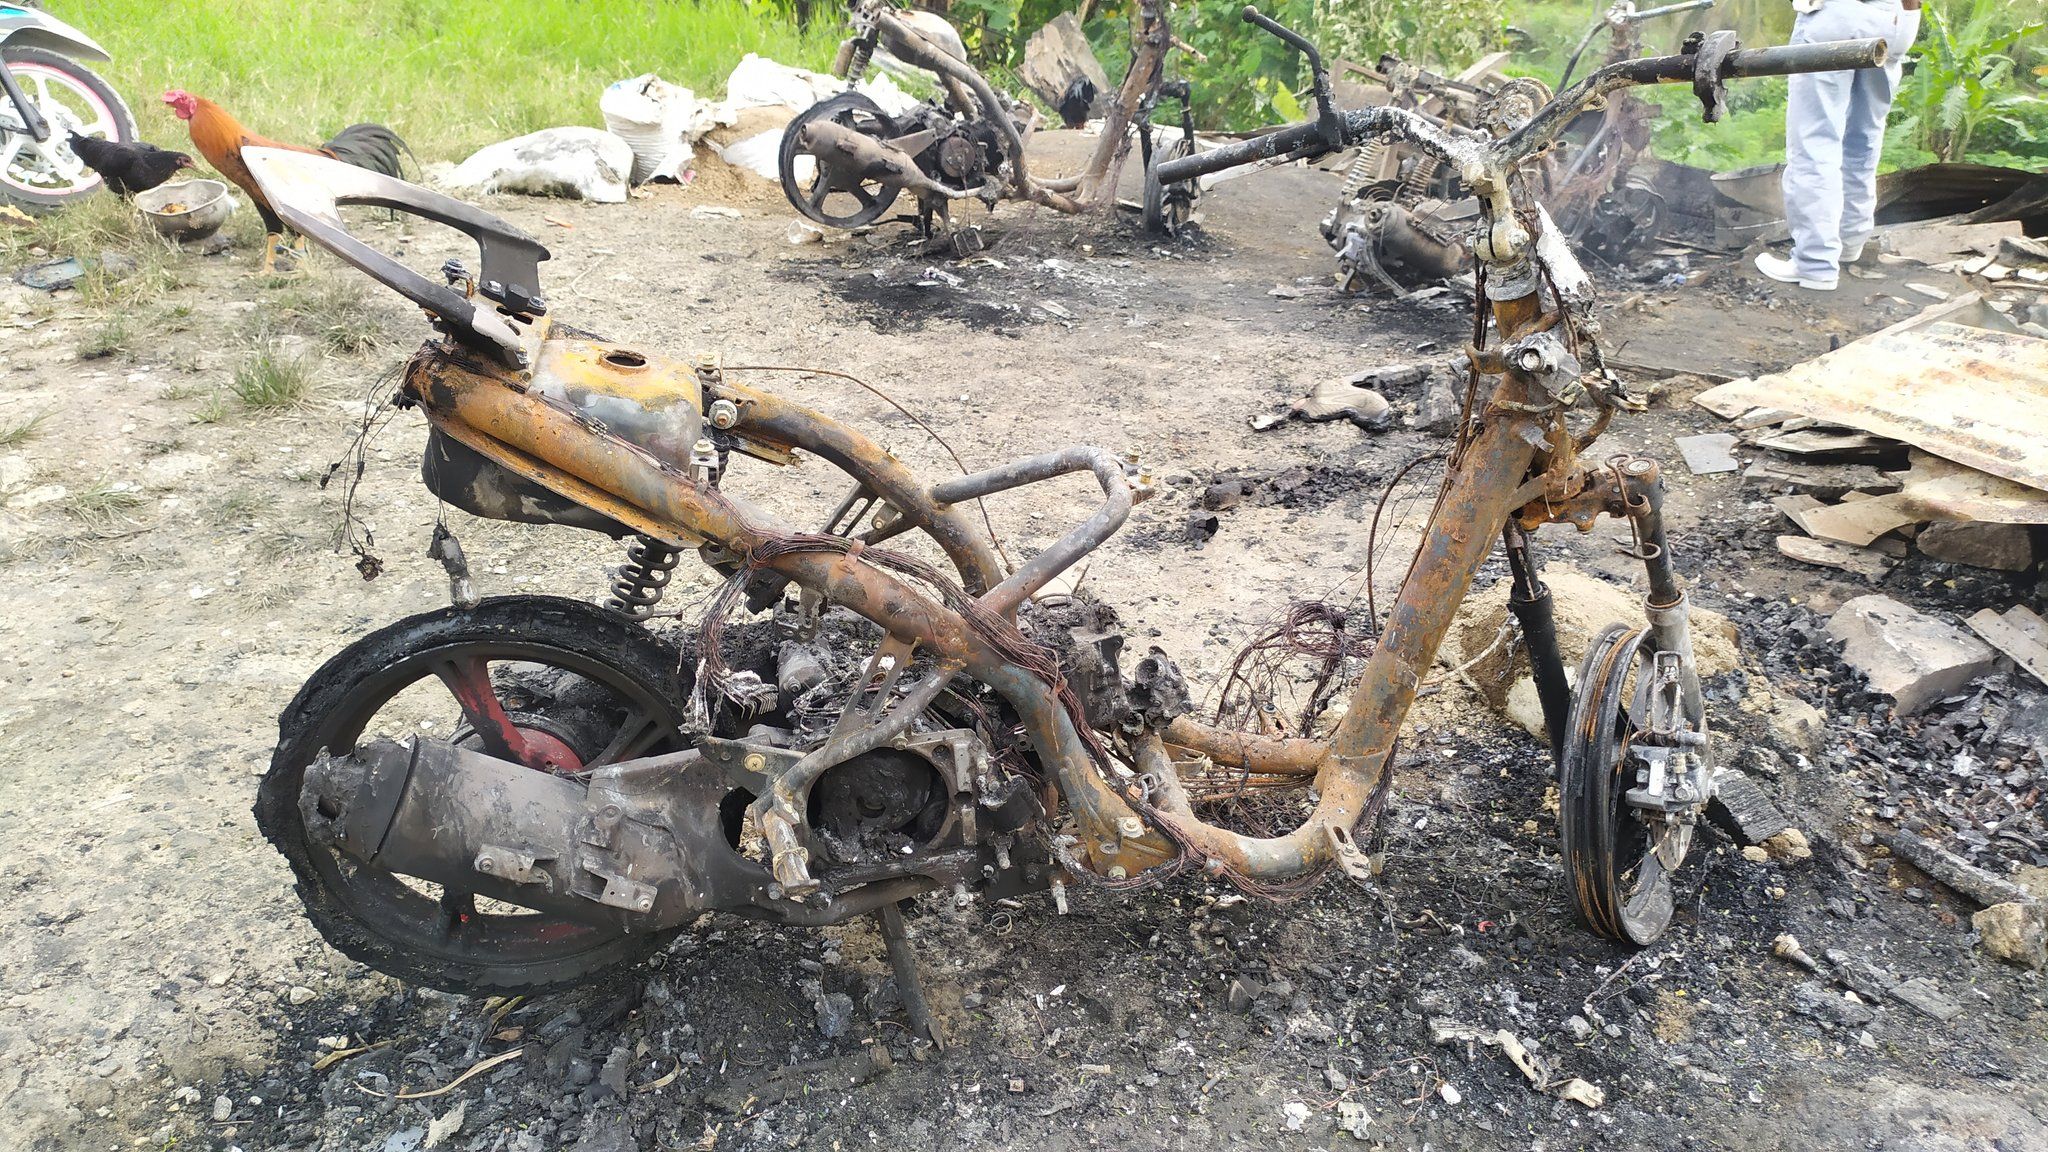 Lokasi kebakaran di tempat parkir motor di salah satu warung di dekat lokasi panjat Tebing Citatah 90, Desa Cipatat, Kecamatan Padalarang, Kabupaten Bandung Barat. Tempat tersebut terbakar pada Minggu 4 April 2021.*